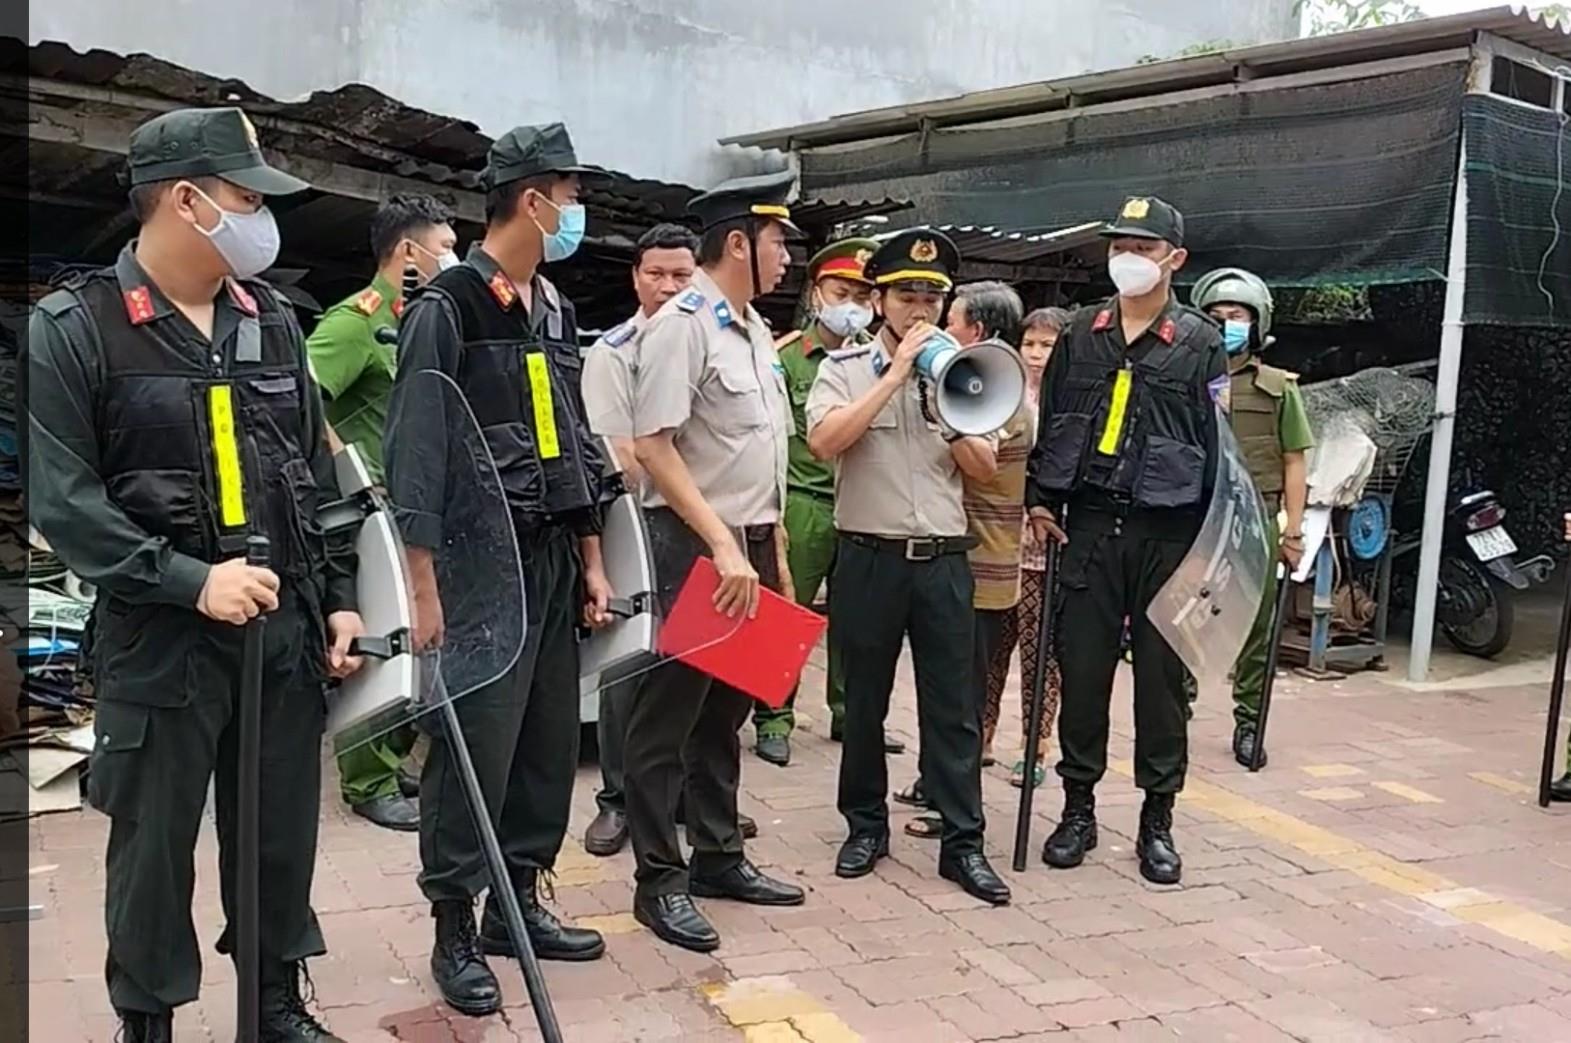 Chi cục Thi hành án dân sự huyện Long Điền tổ chức cưỡng chế thi hành án dân sự chuyển giao quyền sử dụng đất đối với vợ chồng ông Trần Bưởi và bà Đặng Thị Nông